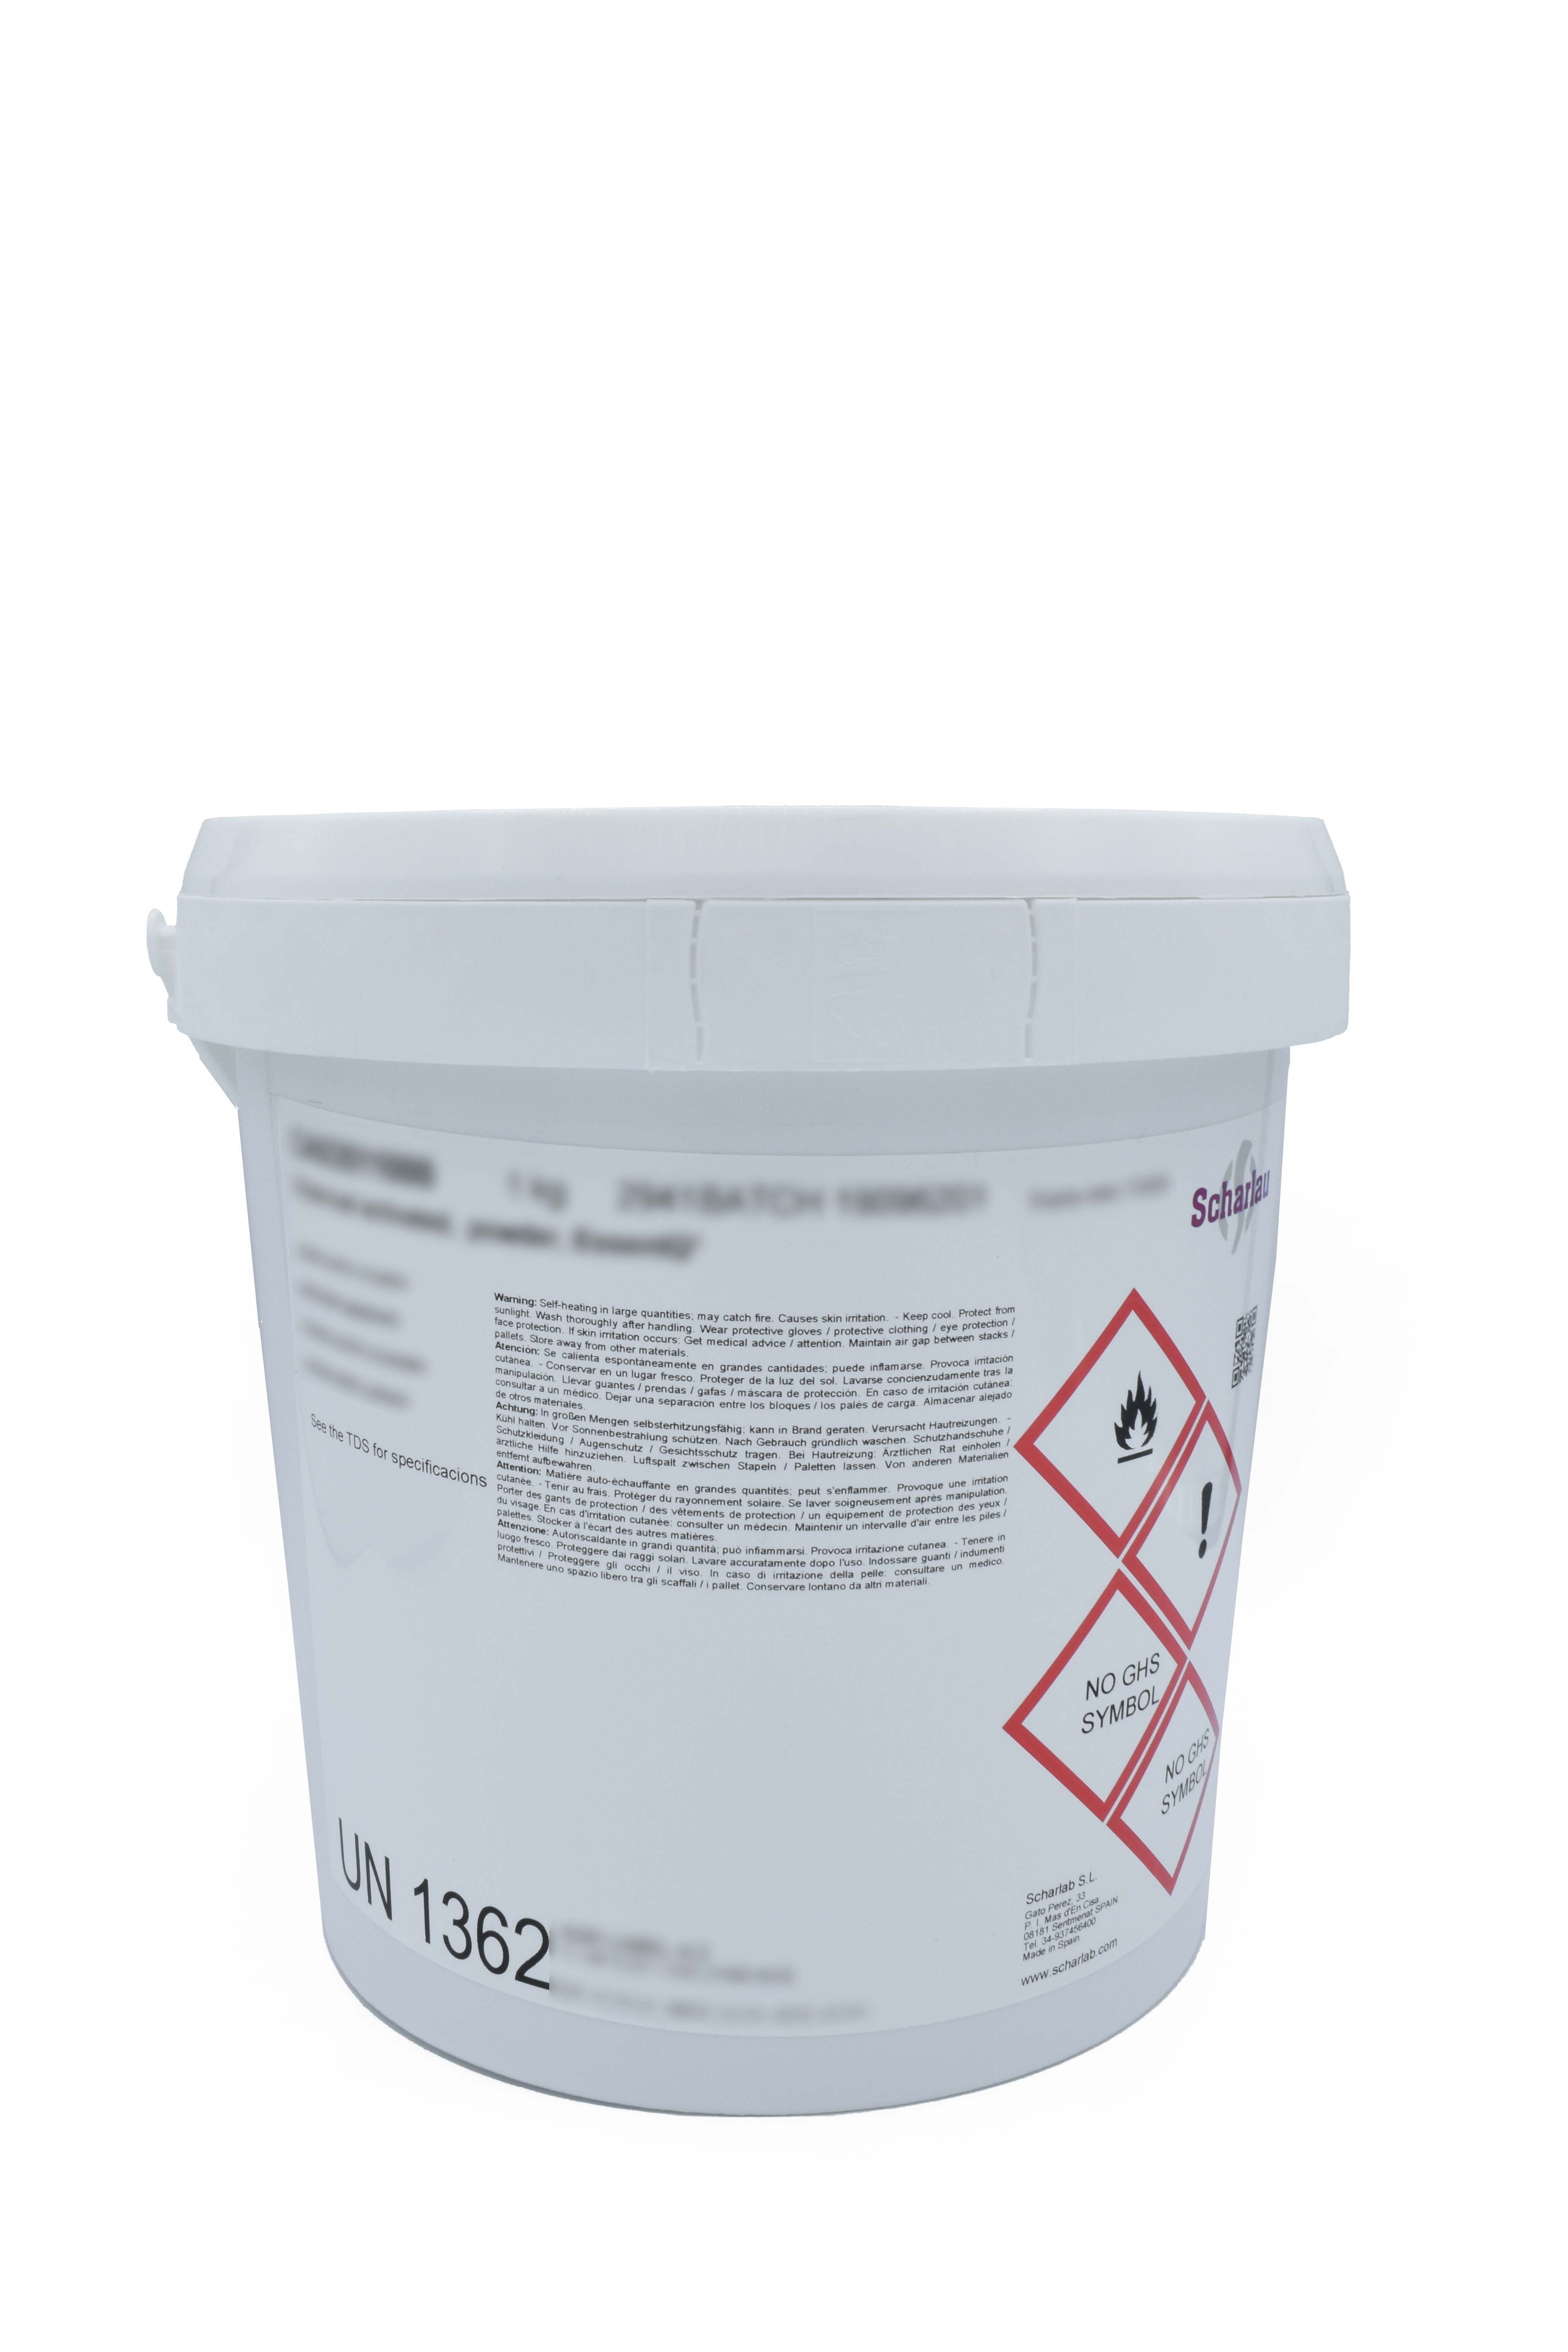 Chemispill® H+, absorbente y neutralizante para derrames de ácidos, con indicador